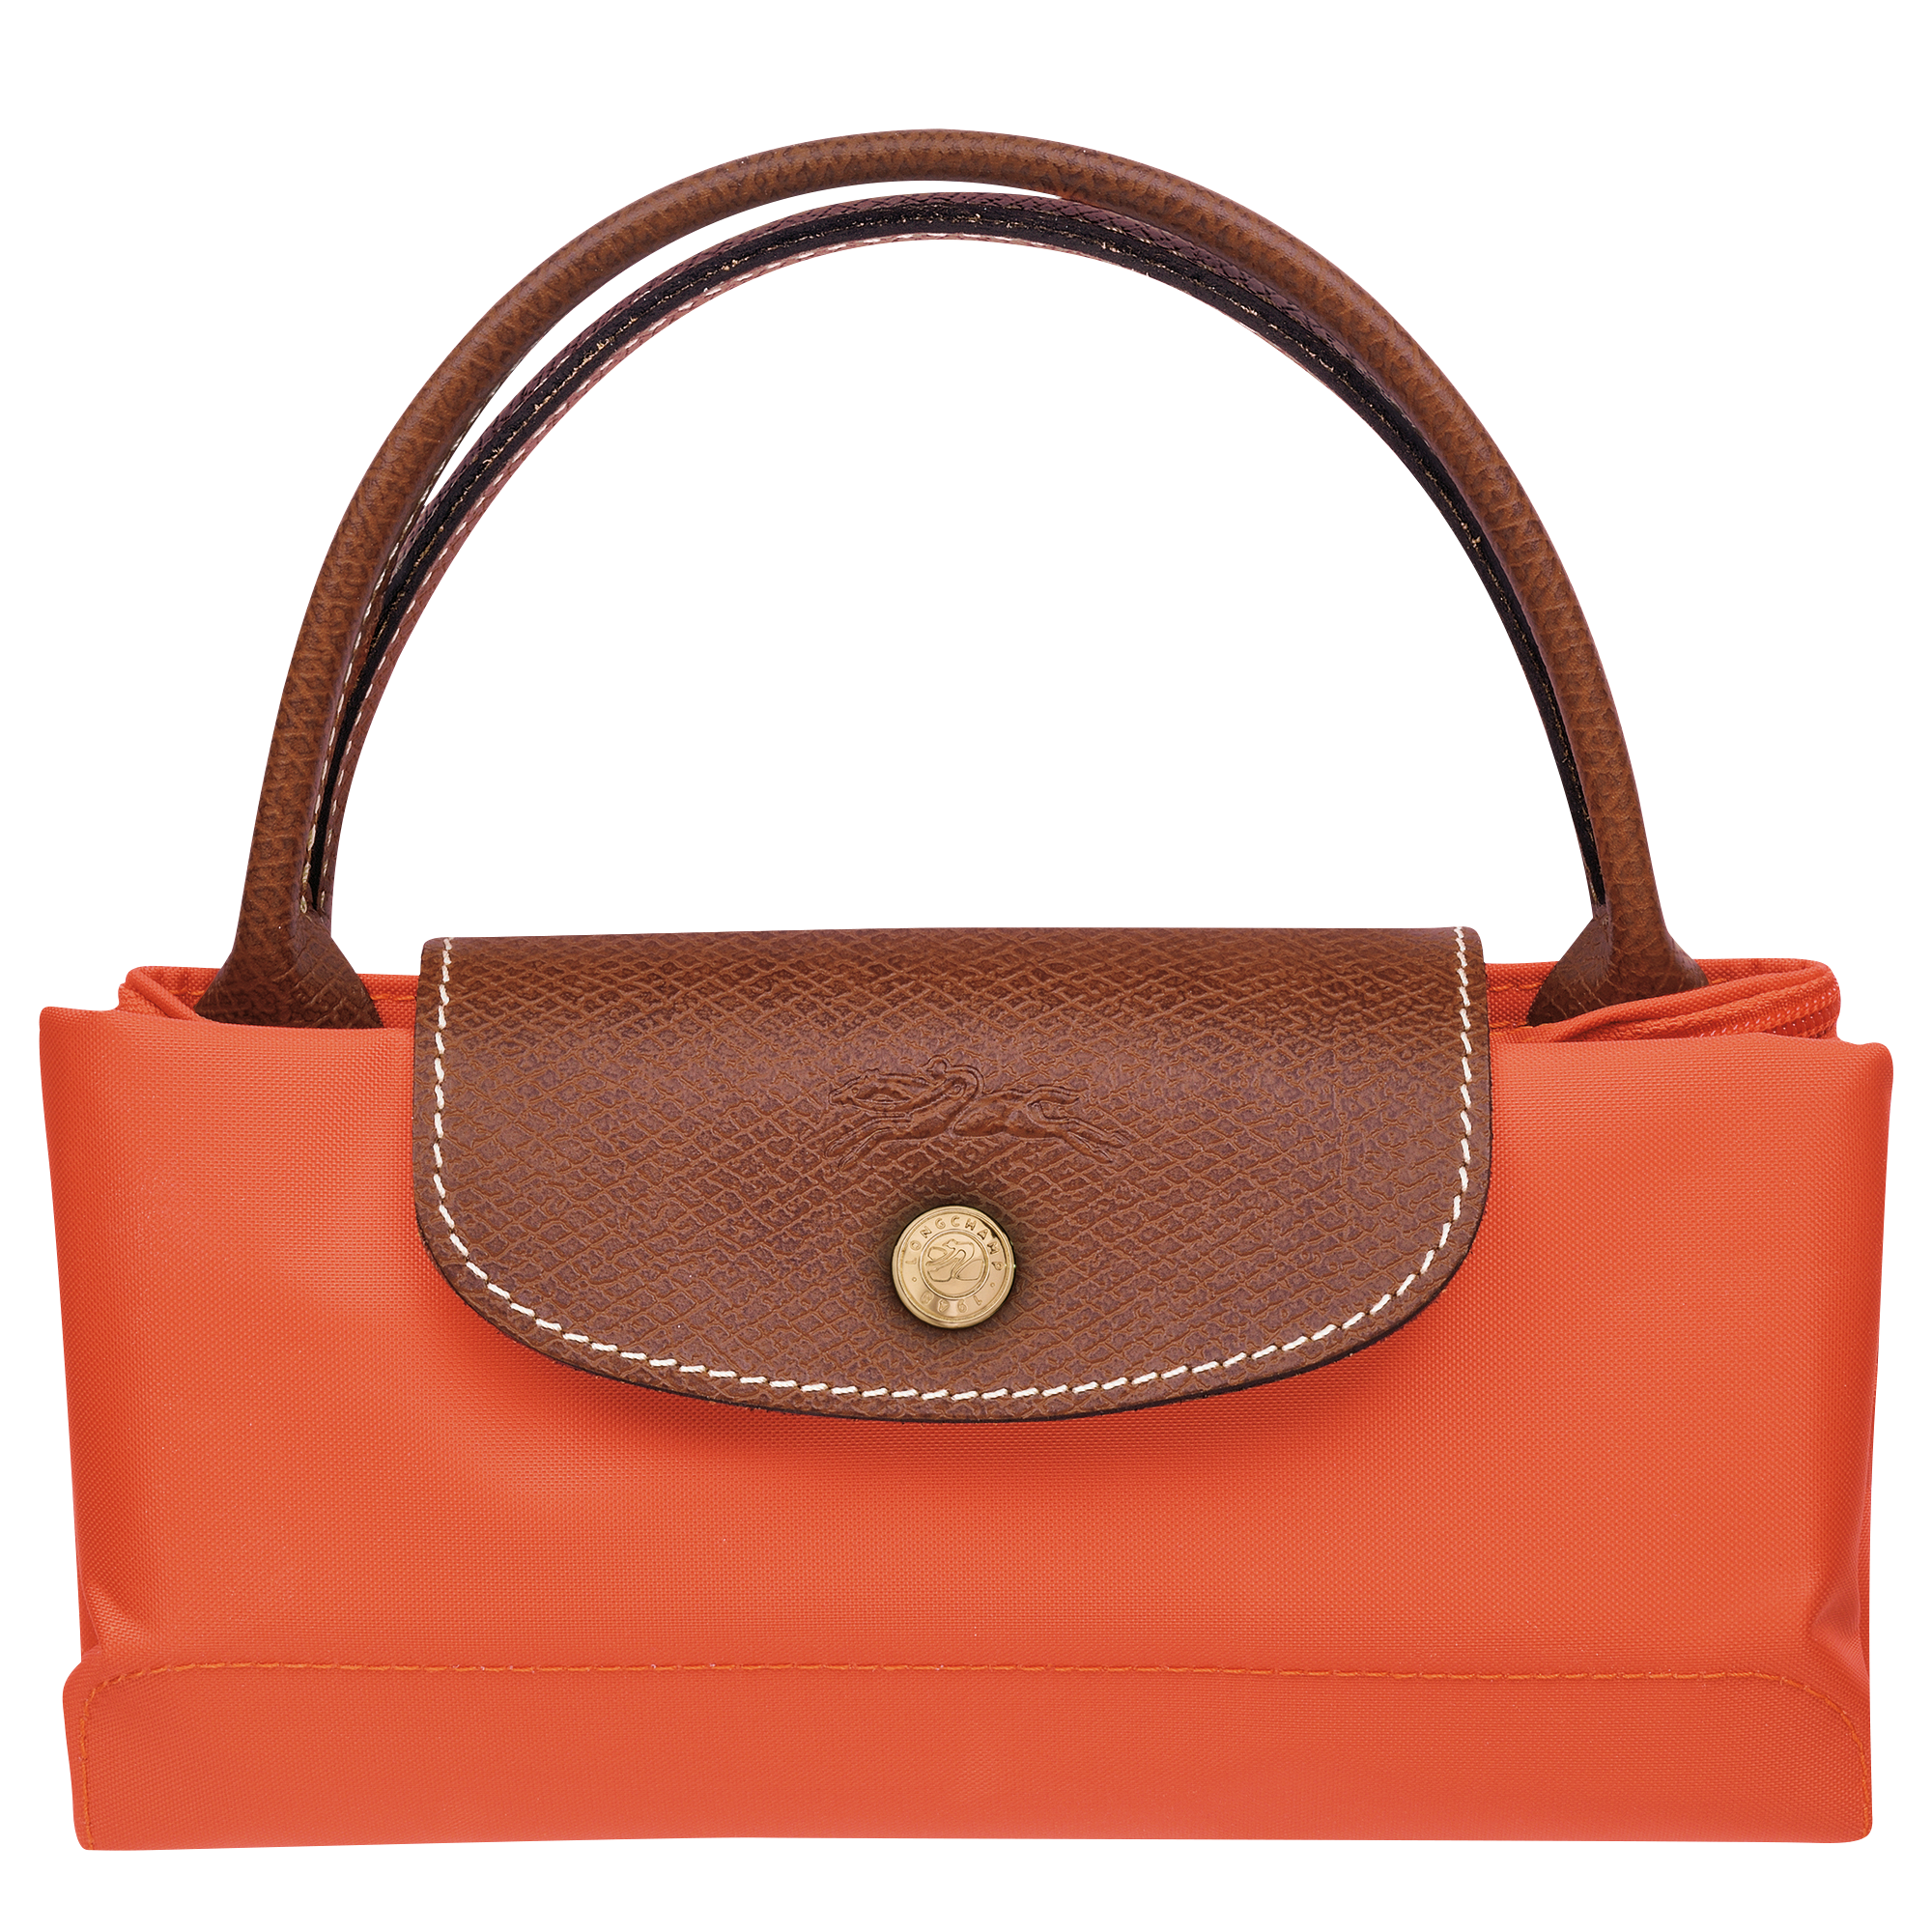 Le Pliage Original Handbag S, Orange